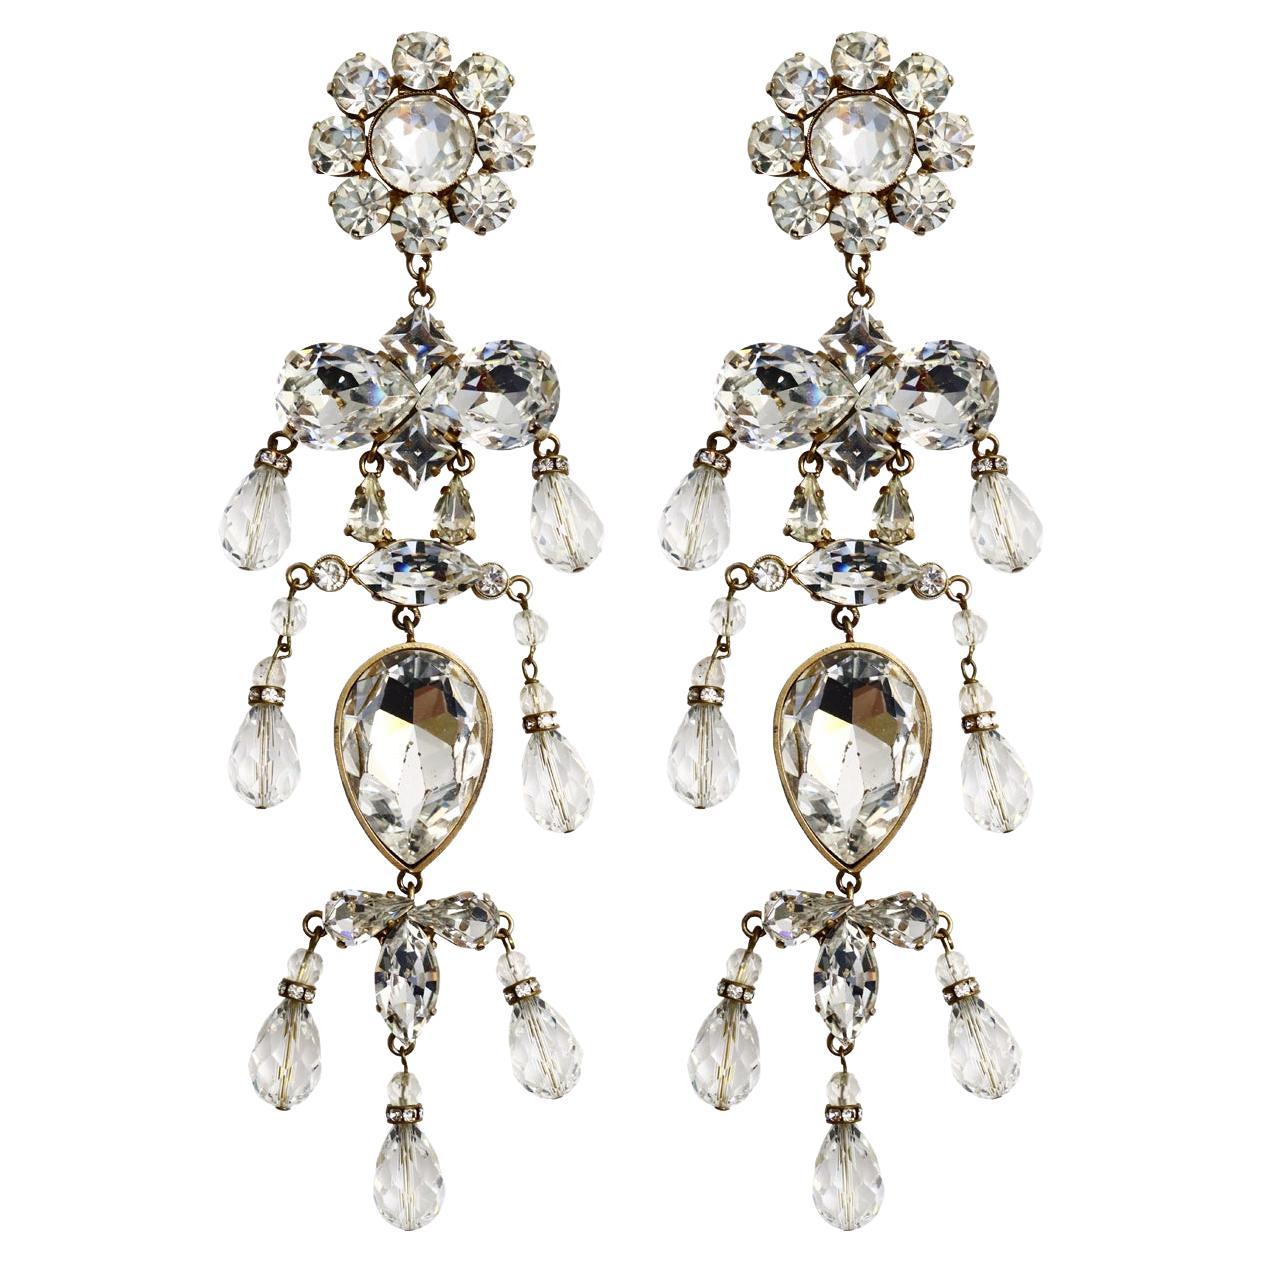 Vintage Christian Lacroix Diamante Long Chandelier Earrings